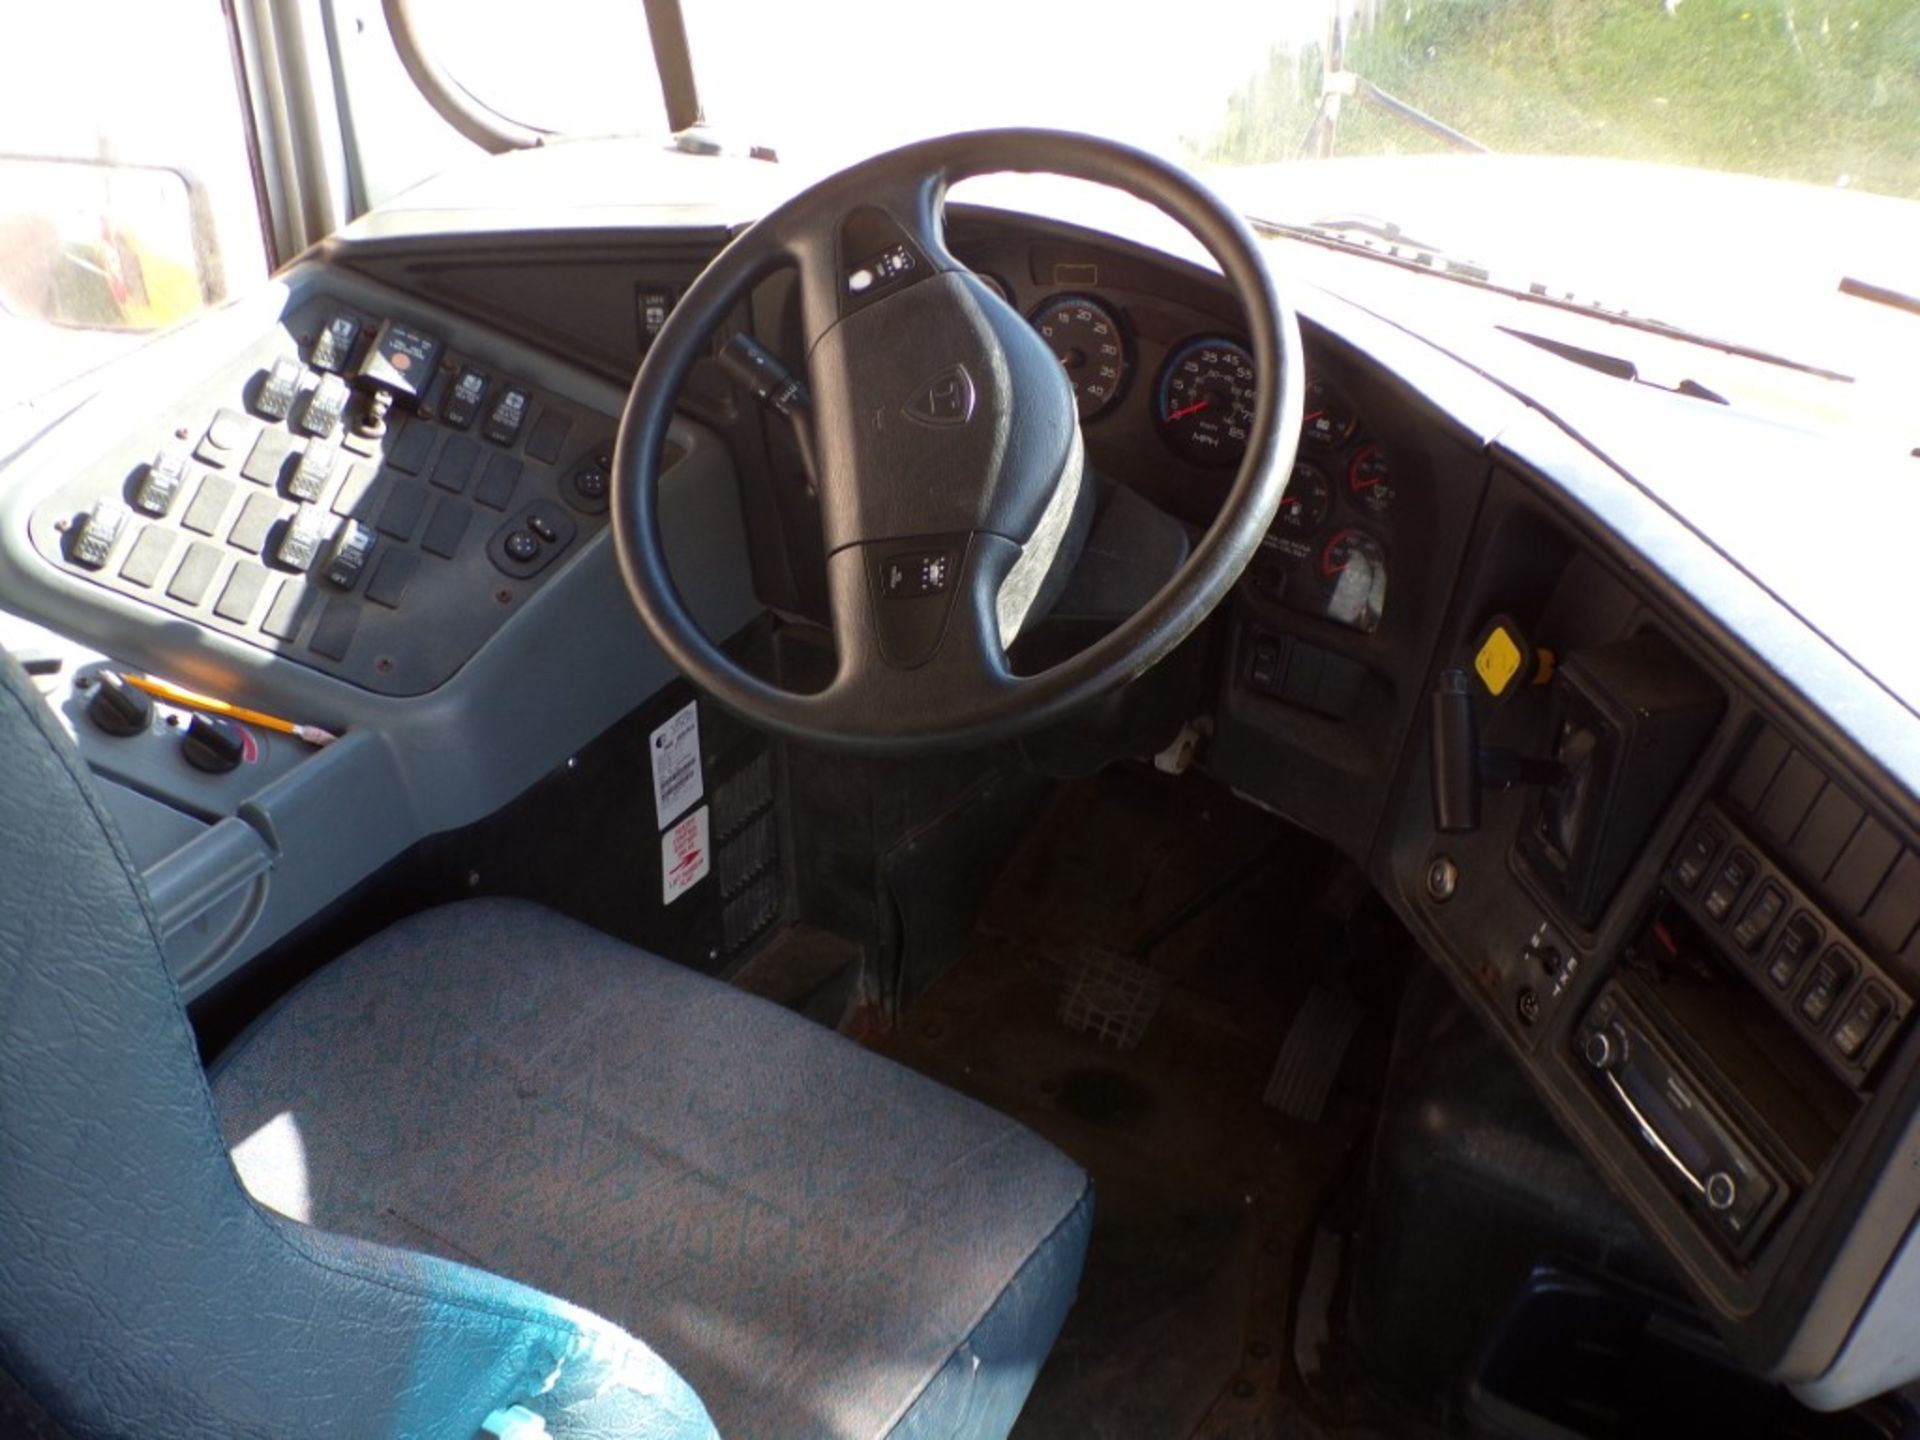 2014 International 66 Seat School Bus, Maxx Force Diesel, 165,315 Miles, # 265, Vin # - Bild 7 aus 7